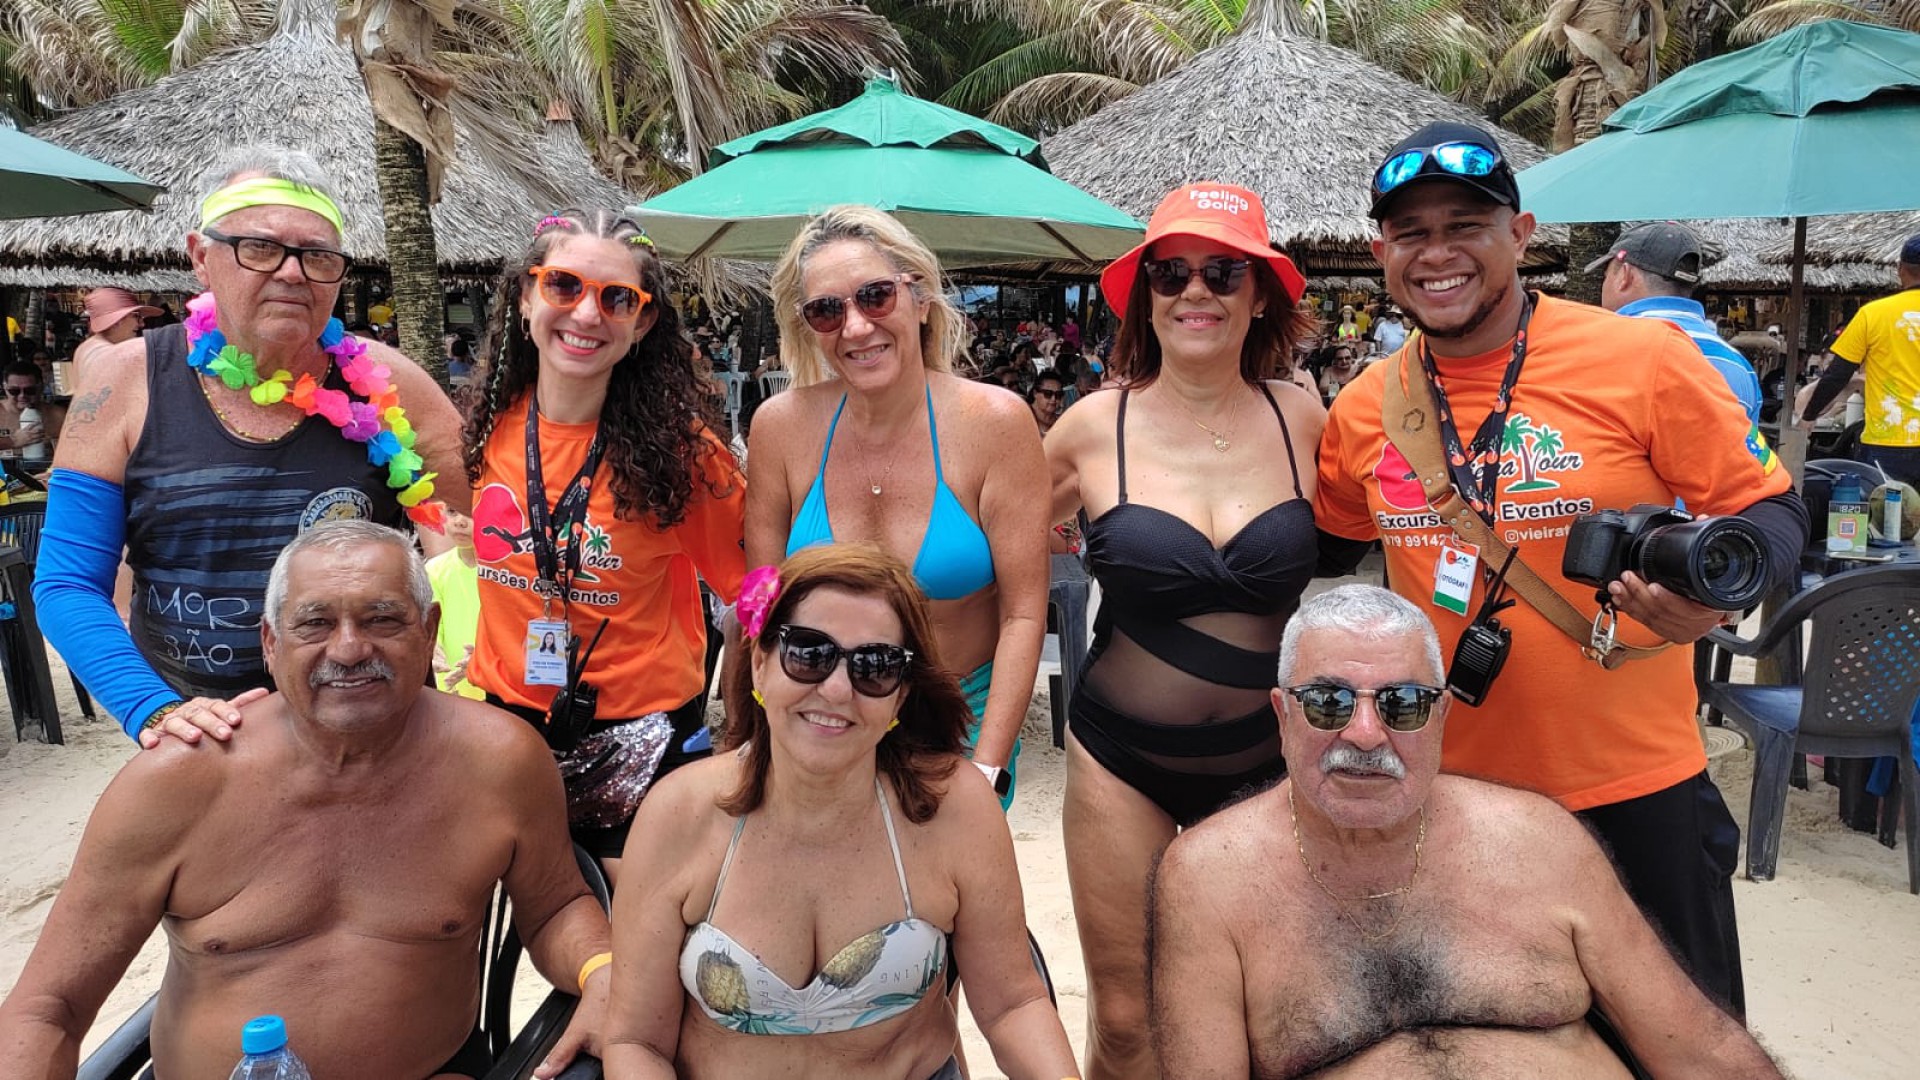 Grupo de Aracaju/SE estava empolgado com o Carnaval e garantiu sair da praia direto para a folia